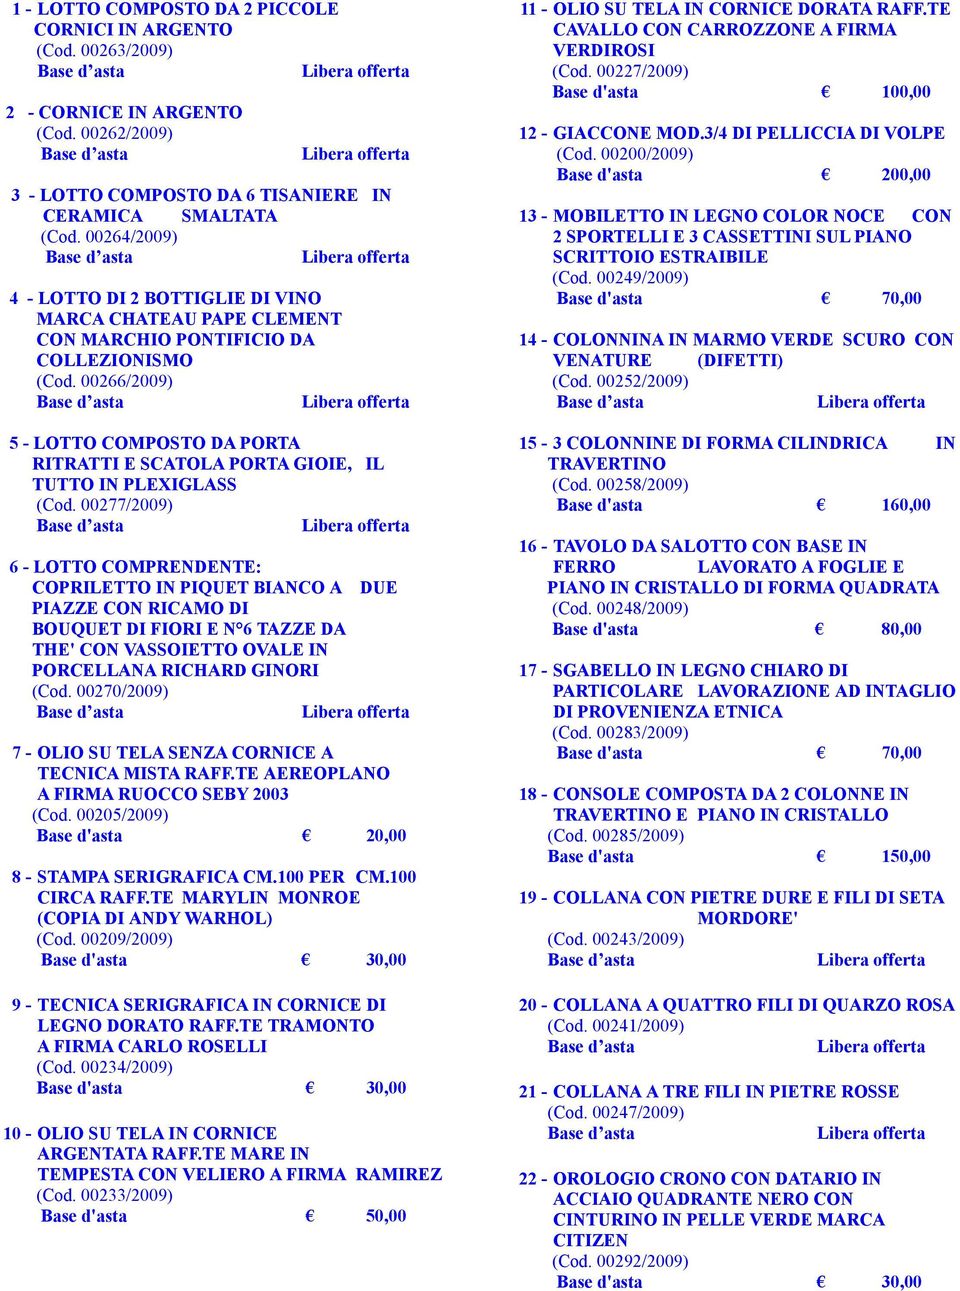 00266/2009) 5 - LOTTO COMPOSTO DA PORTA RITRATTI E SCATOLA PORTA GIOIE, IL TUTTO IN PLEXIGLASS (Cod.